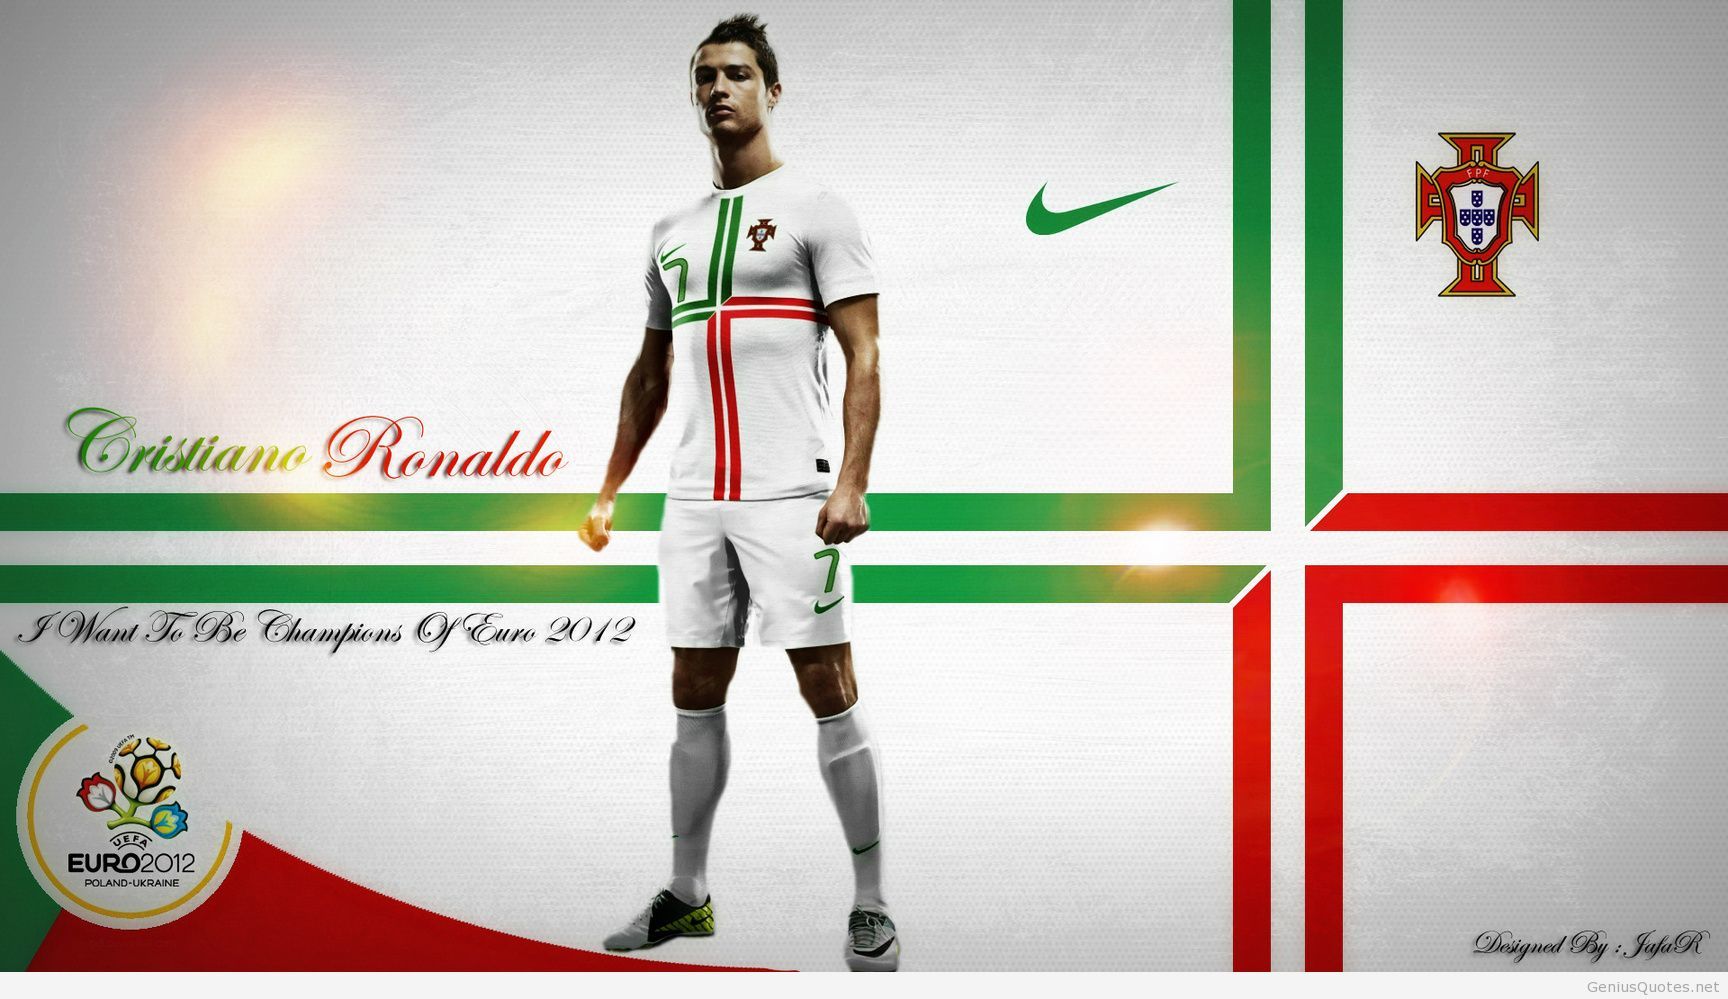 Cristiano Ronaldo - World Cup Cristiano Ronaldo , HD Wallpaper & Backgrounds